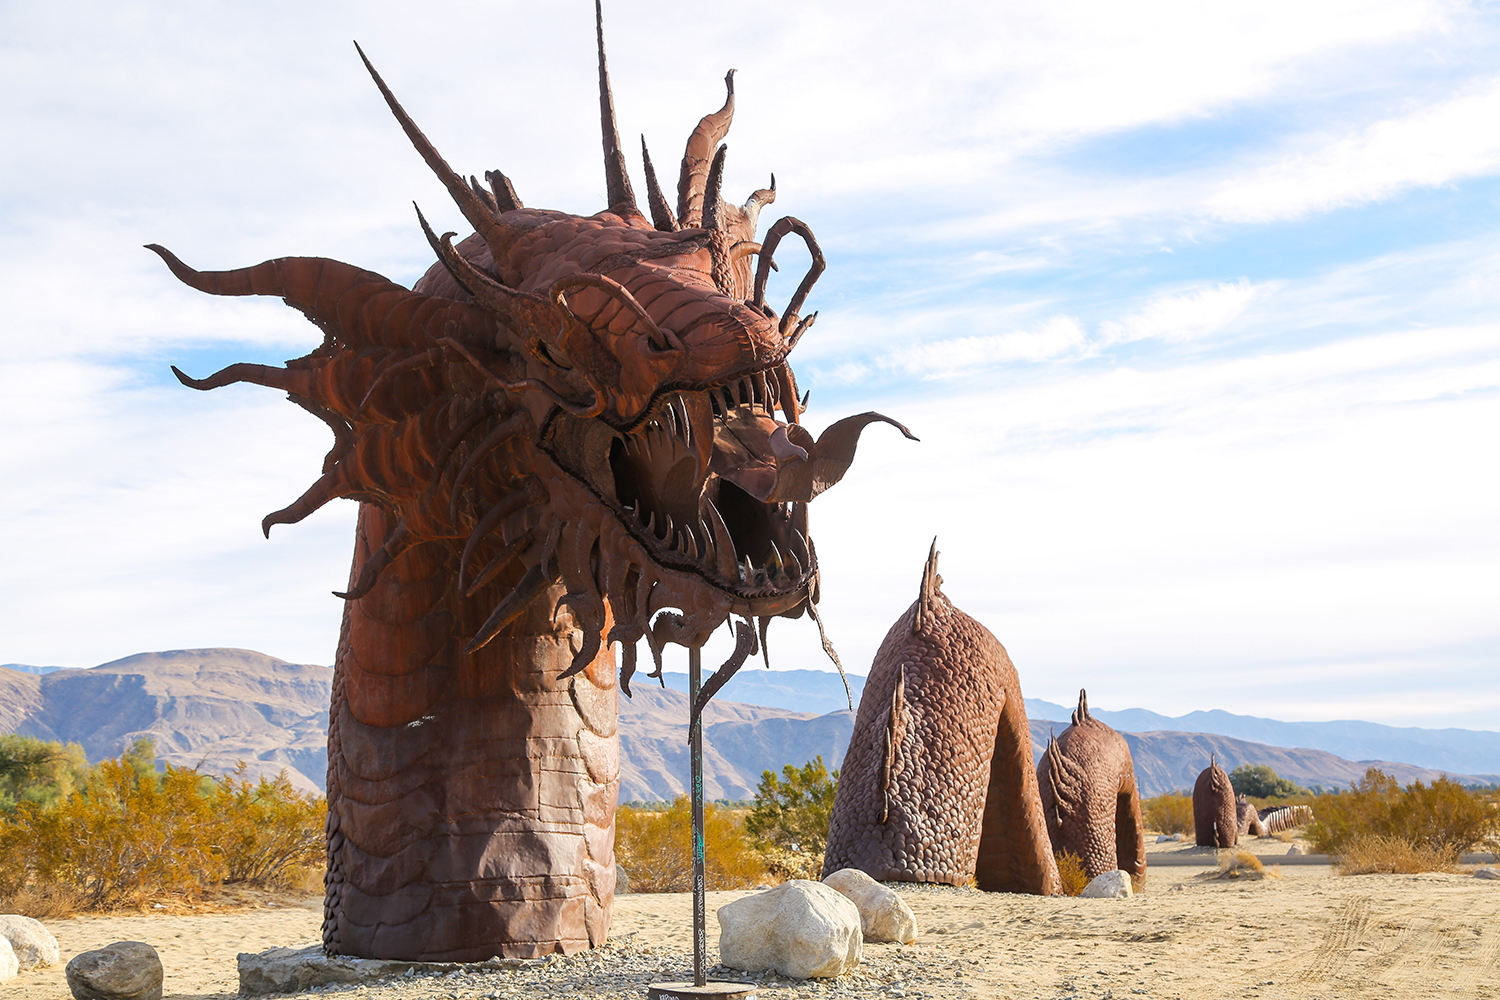 Large outdoor metal sculpture of a dragon by artist Ricardo Breceda near Borrego Springs, California.